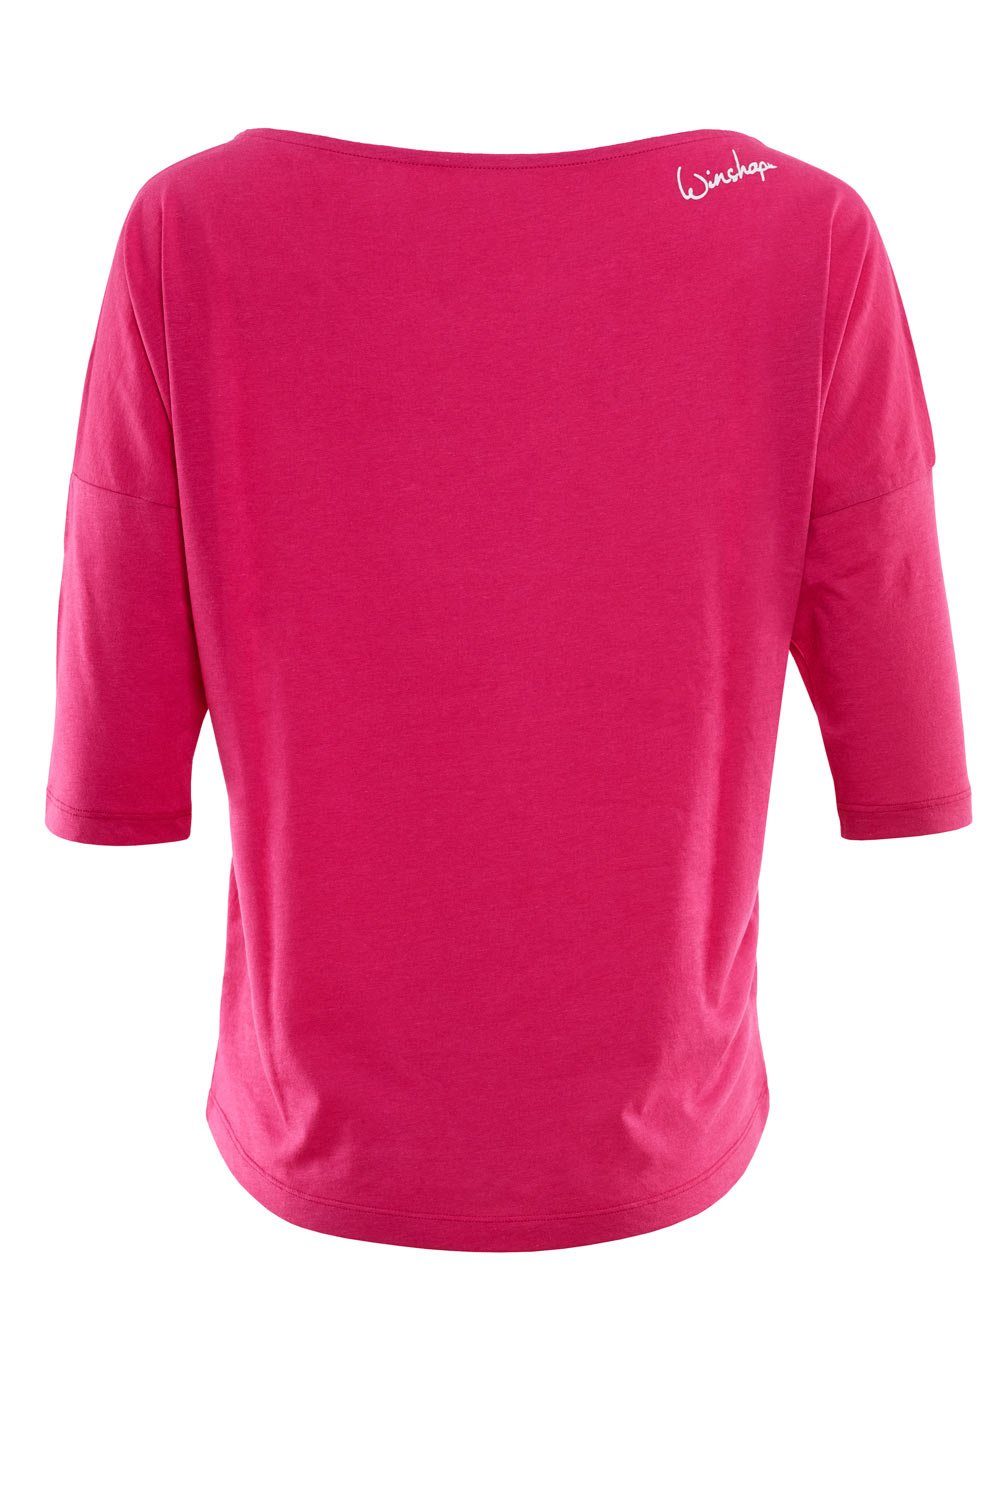 Winshape 3/4-Arm-Shirt weißem weiß mit pink deep glitzer MCS001 - Glitzer-Aufdruck leicht ultra